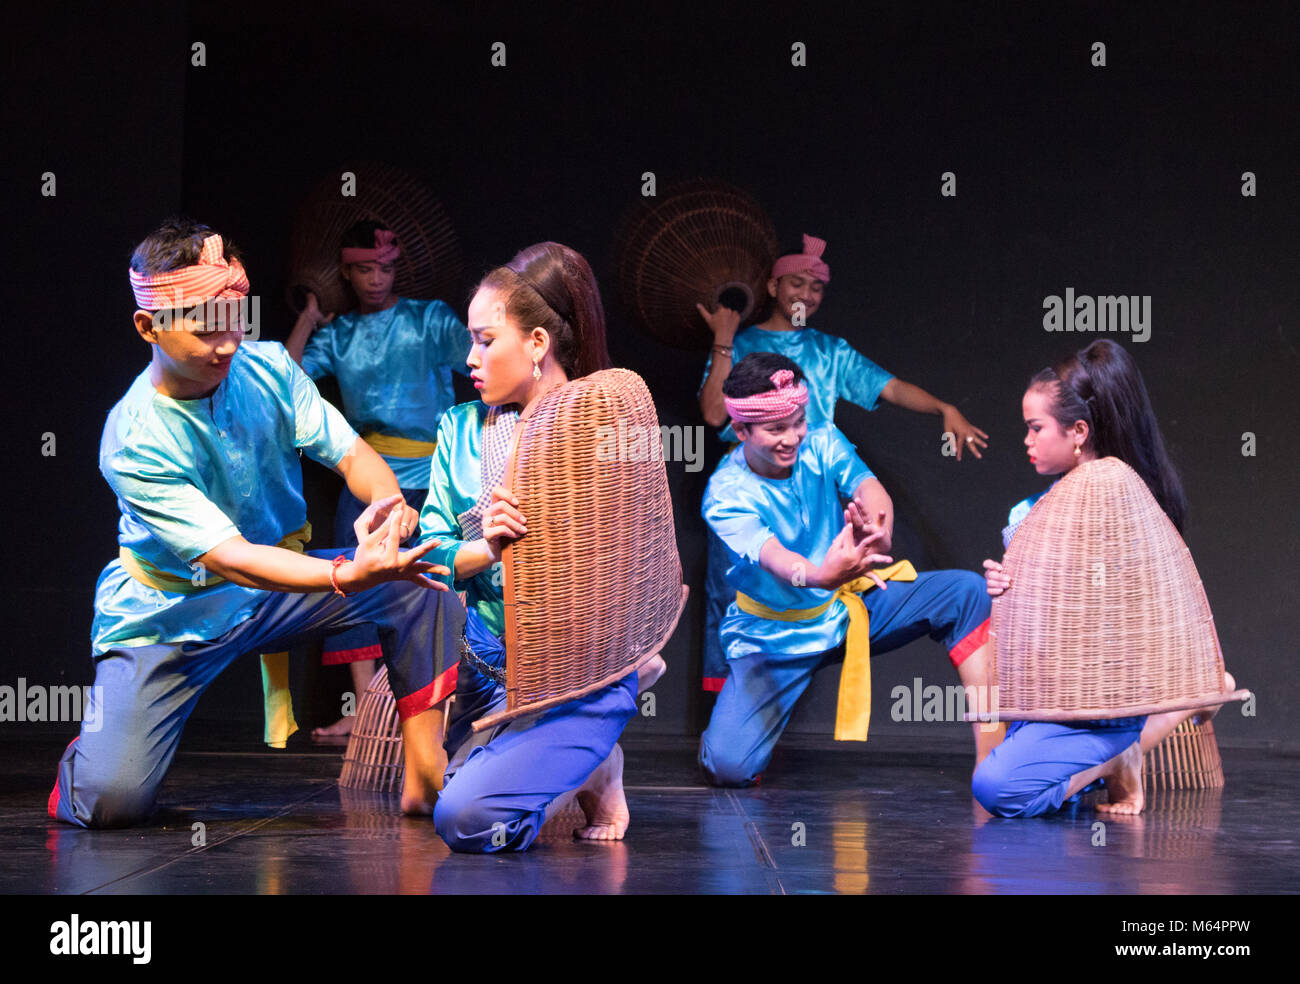 Cambogia dancing - tradizionale ballo folk, Phnom Penh, Cambogia, Asia Foto Stock